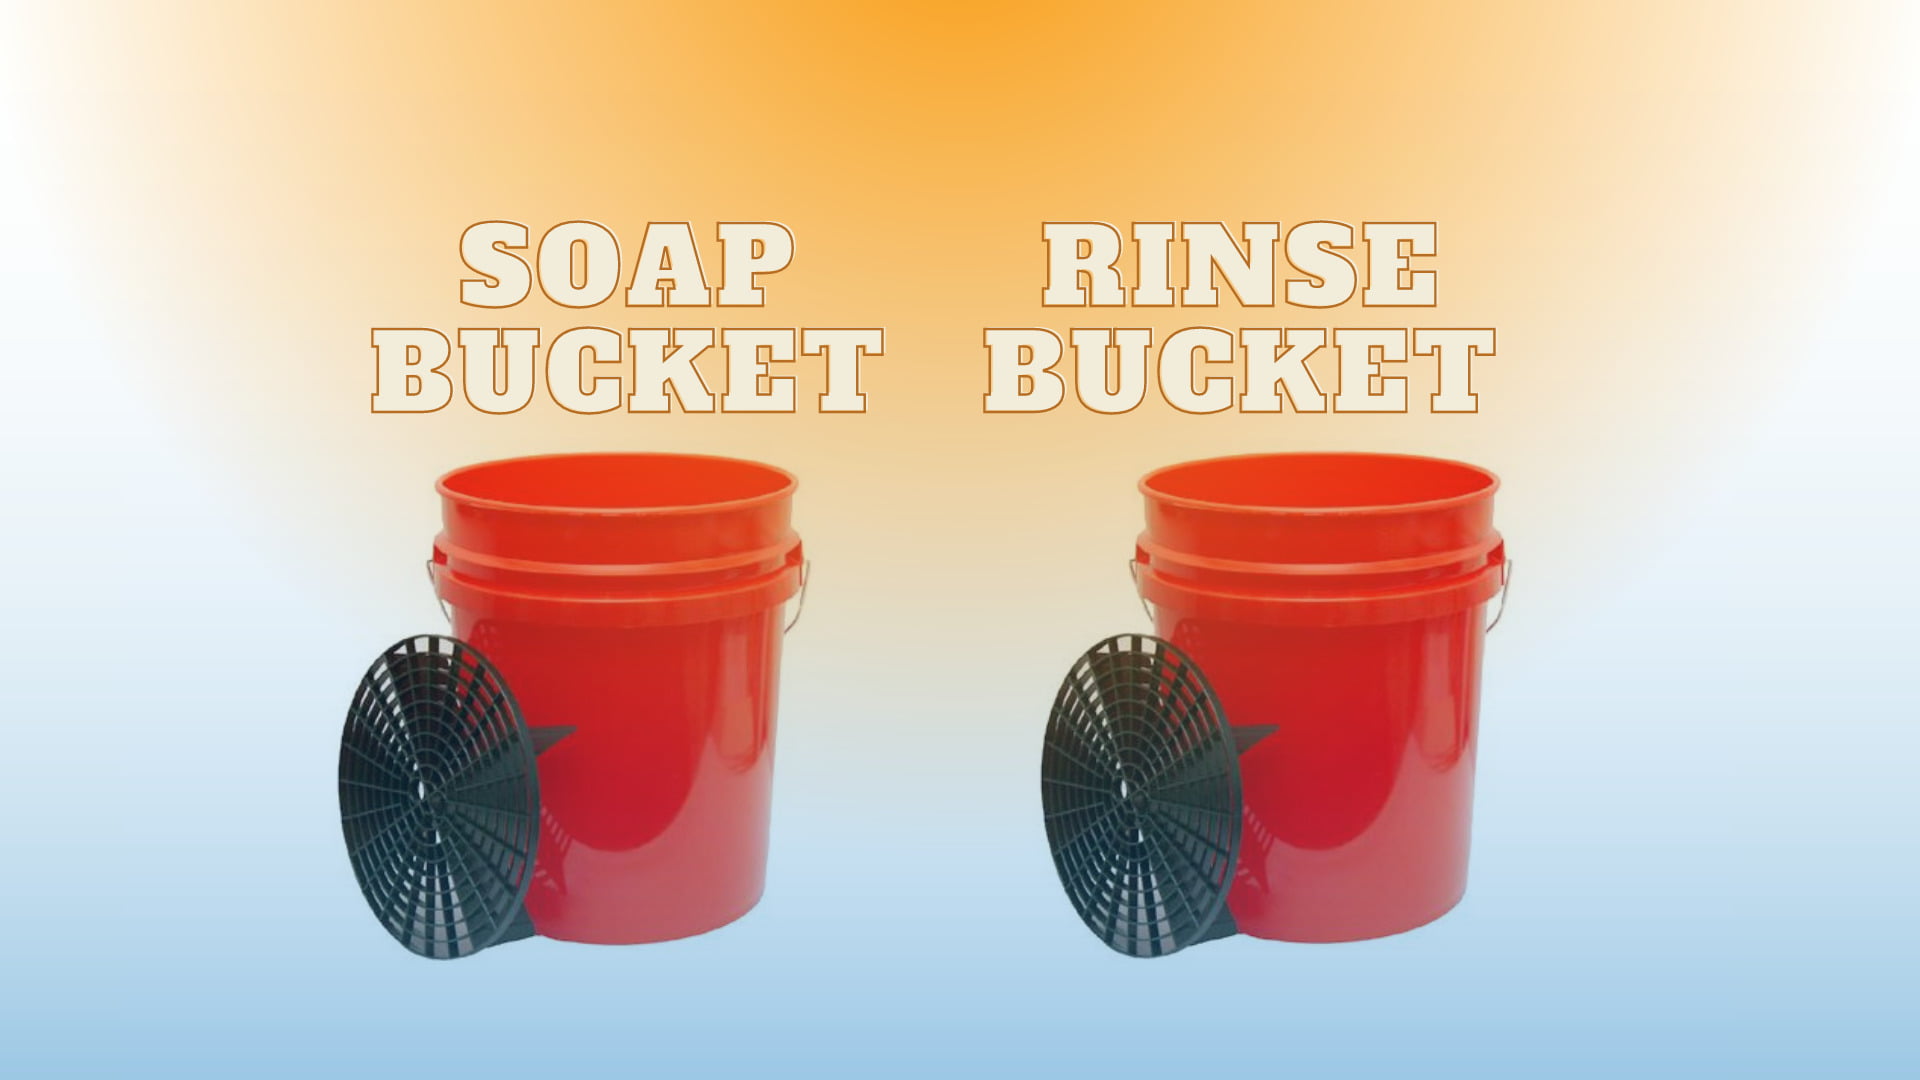 2-bucket car wash method